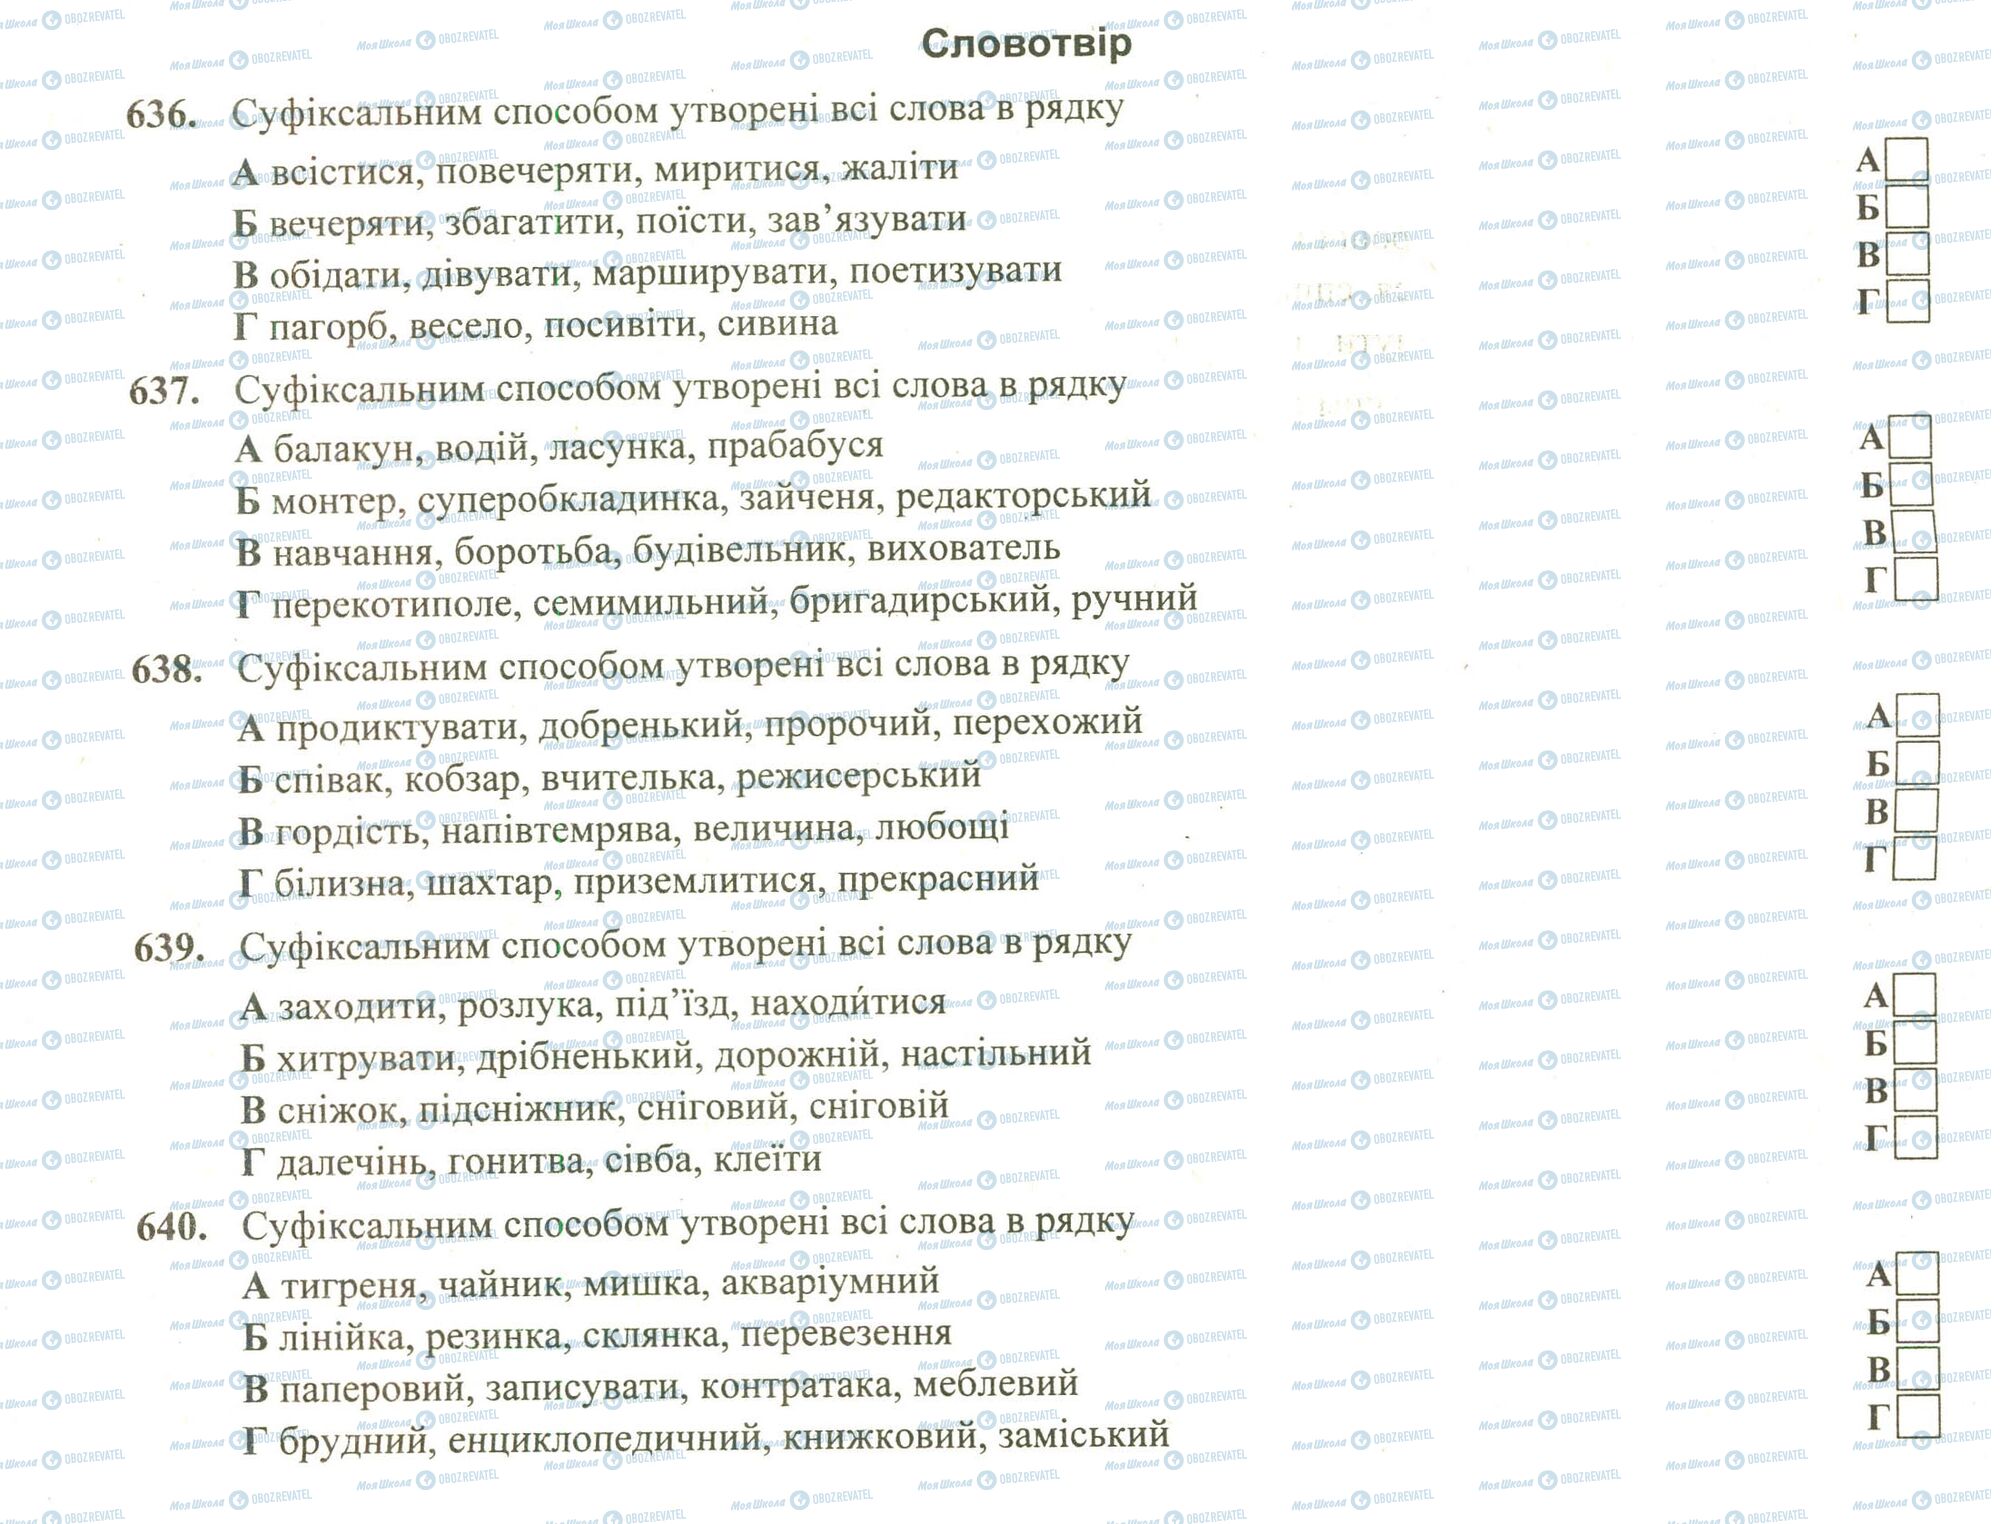 ЗНО Укр мова 11 класс страница 636-640